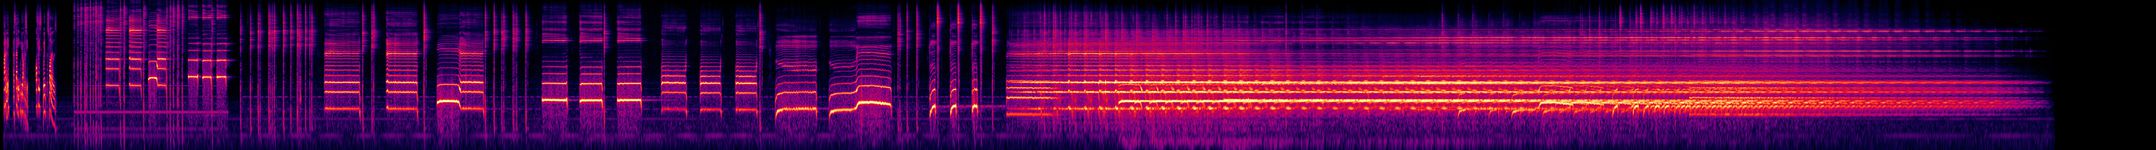 13 Radiophone Texte - 13. Amt Mit Schwalben - Spectrogram.jpg